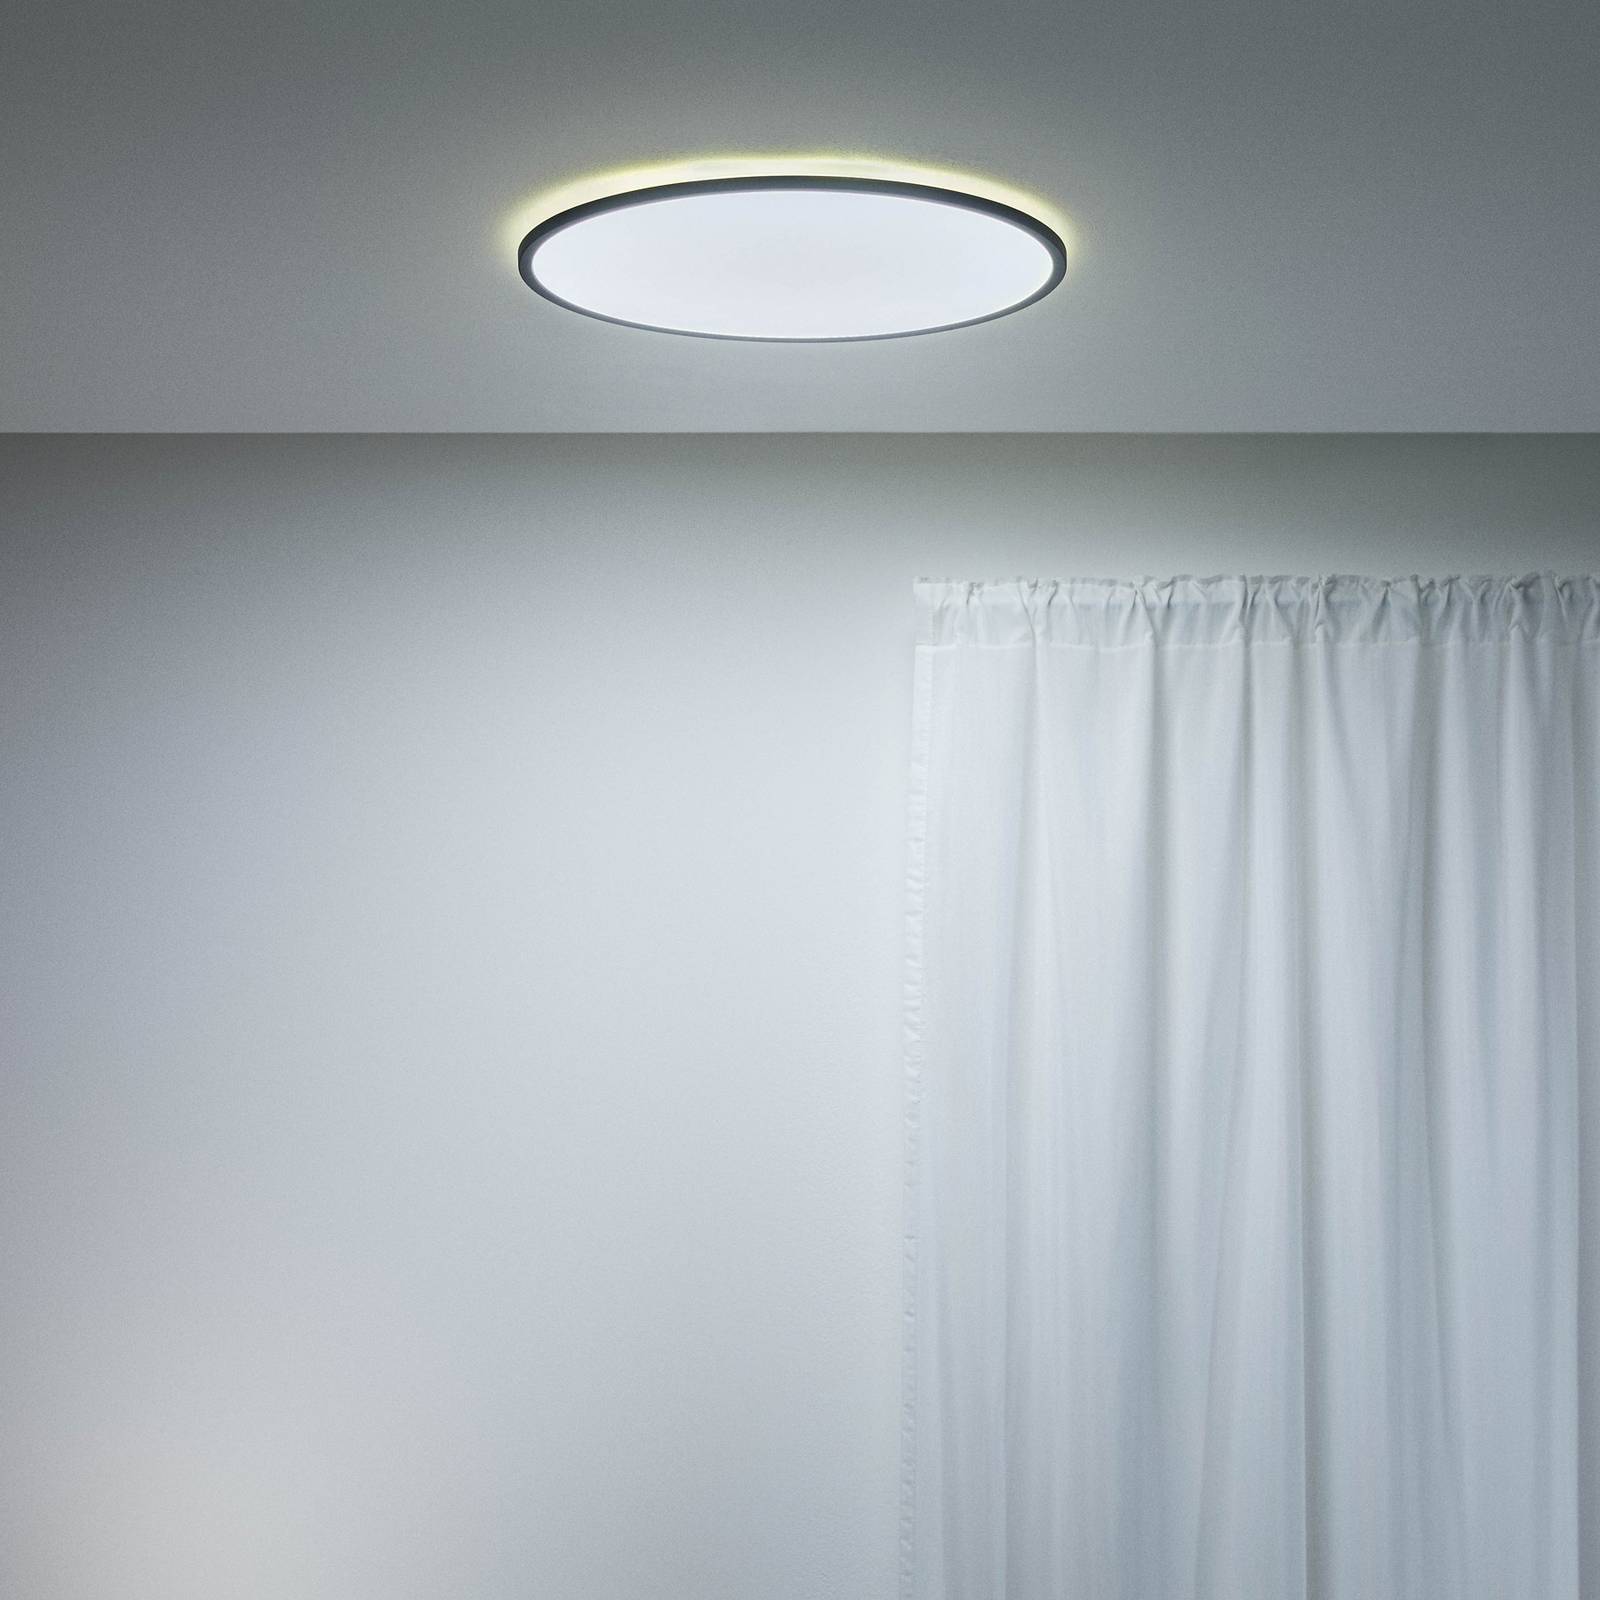 WiZ SuperSlim LED stropné svetlo CCT Ø55cm čierne